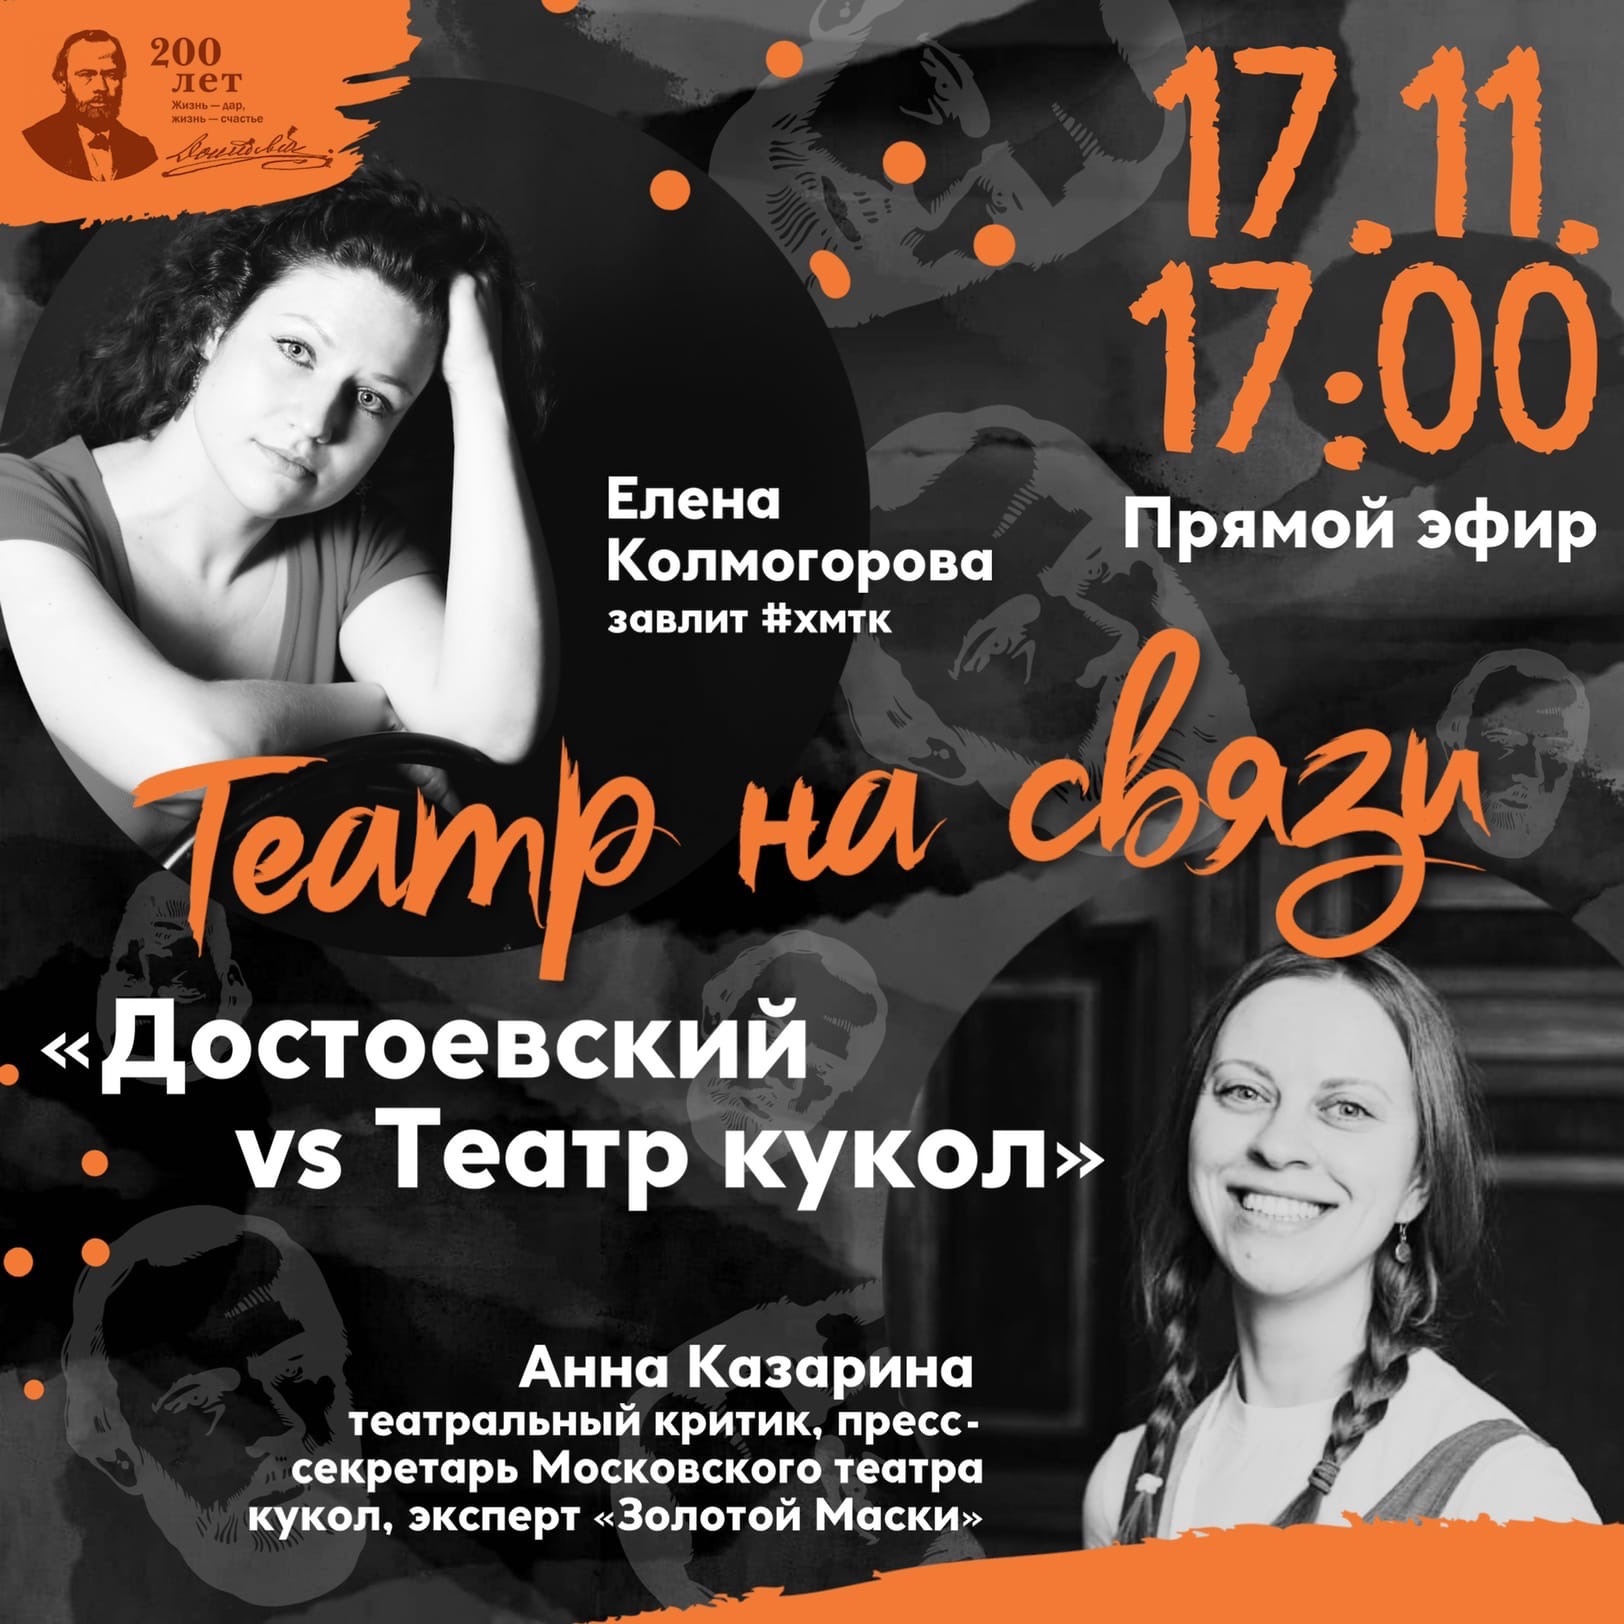 Ханты-Мансийского театра кукол приглашает на прямой эфир в Инстаграм